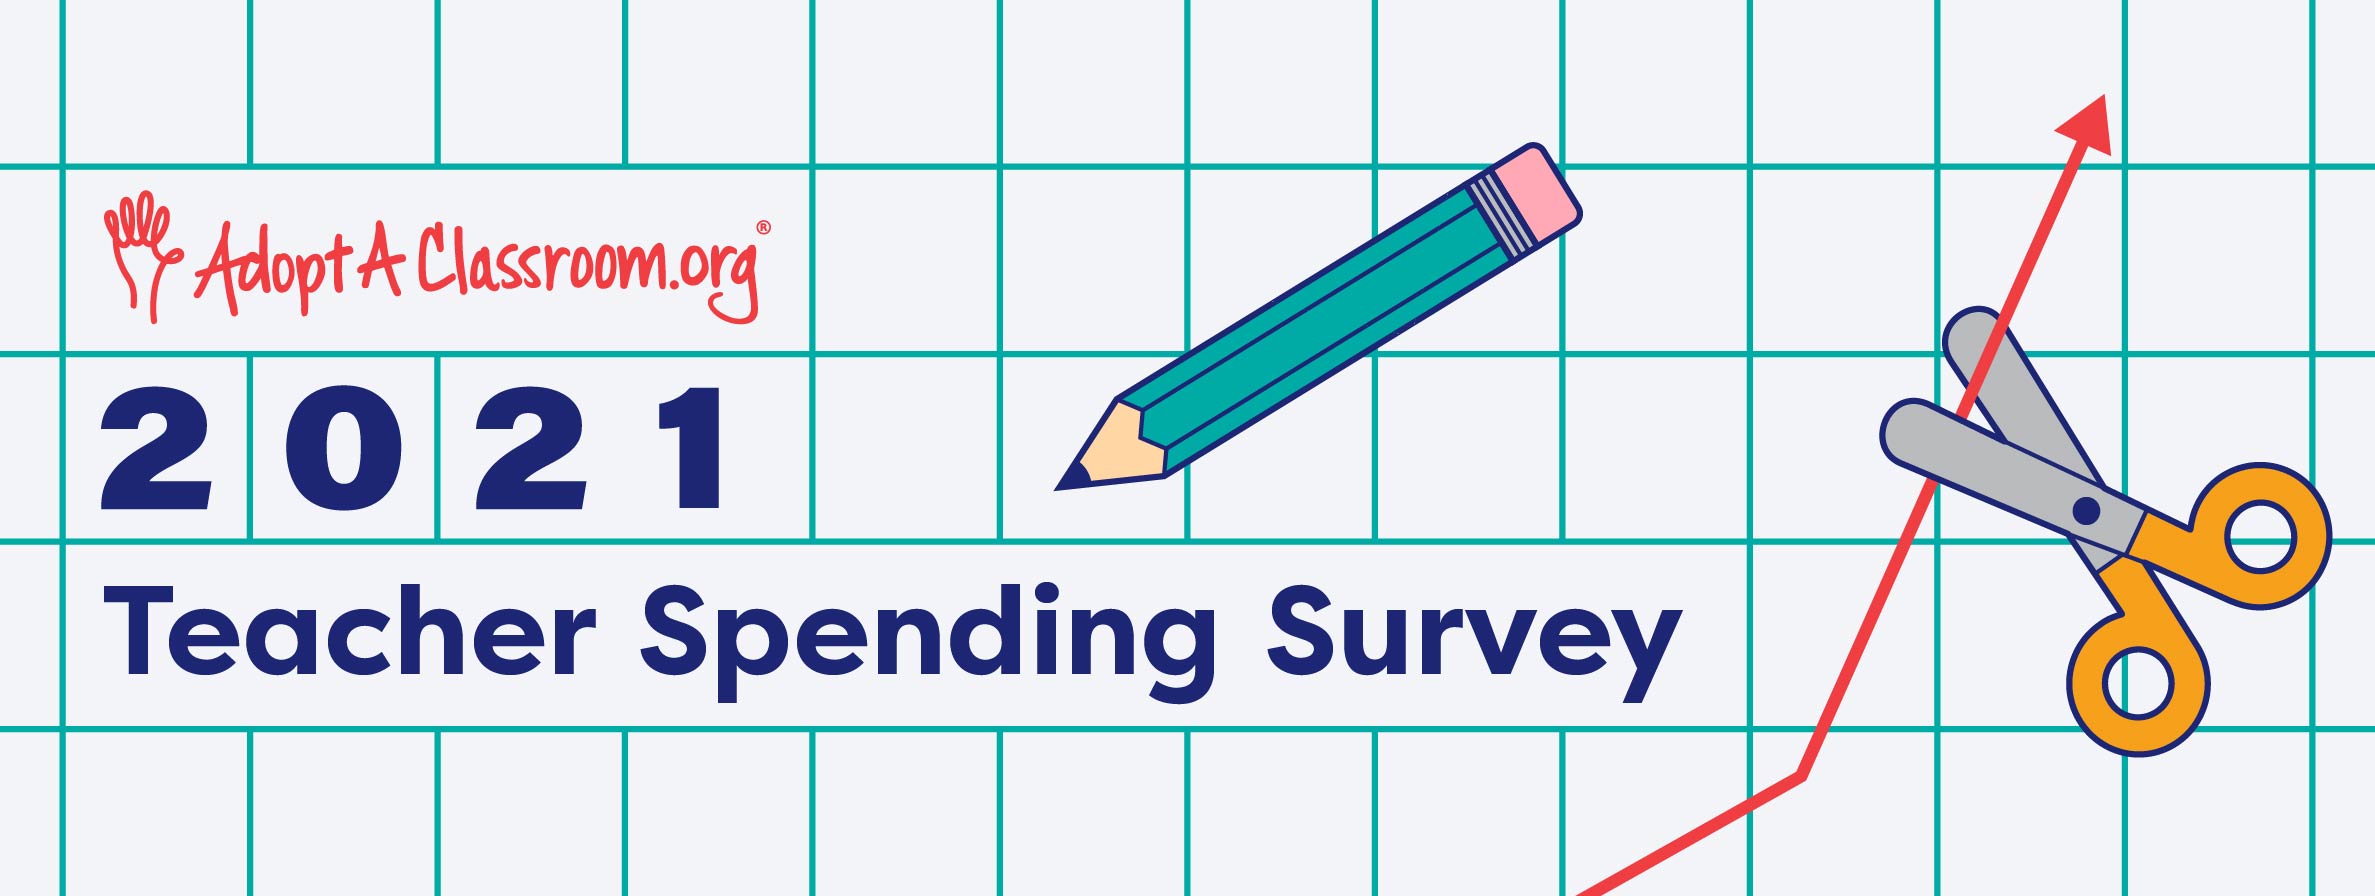 2021 Teacher Spending Survey